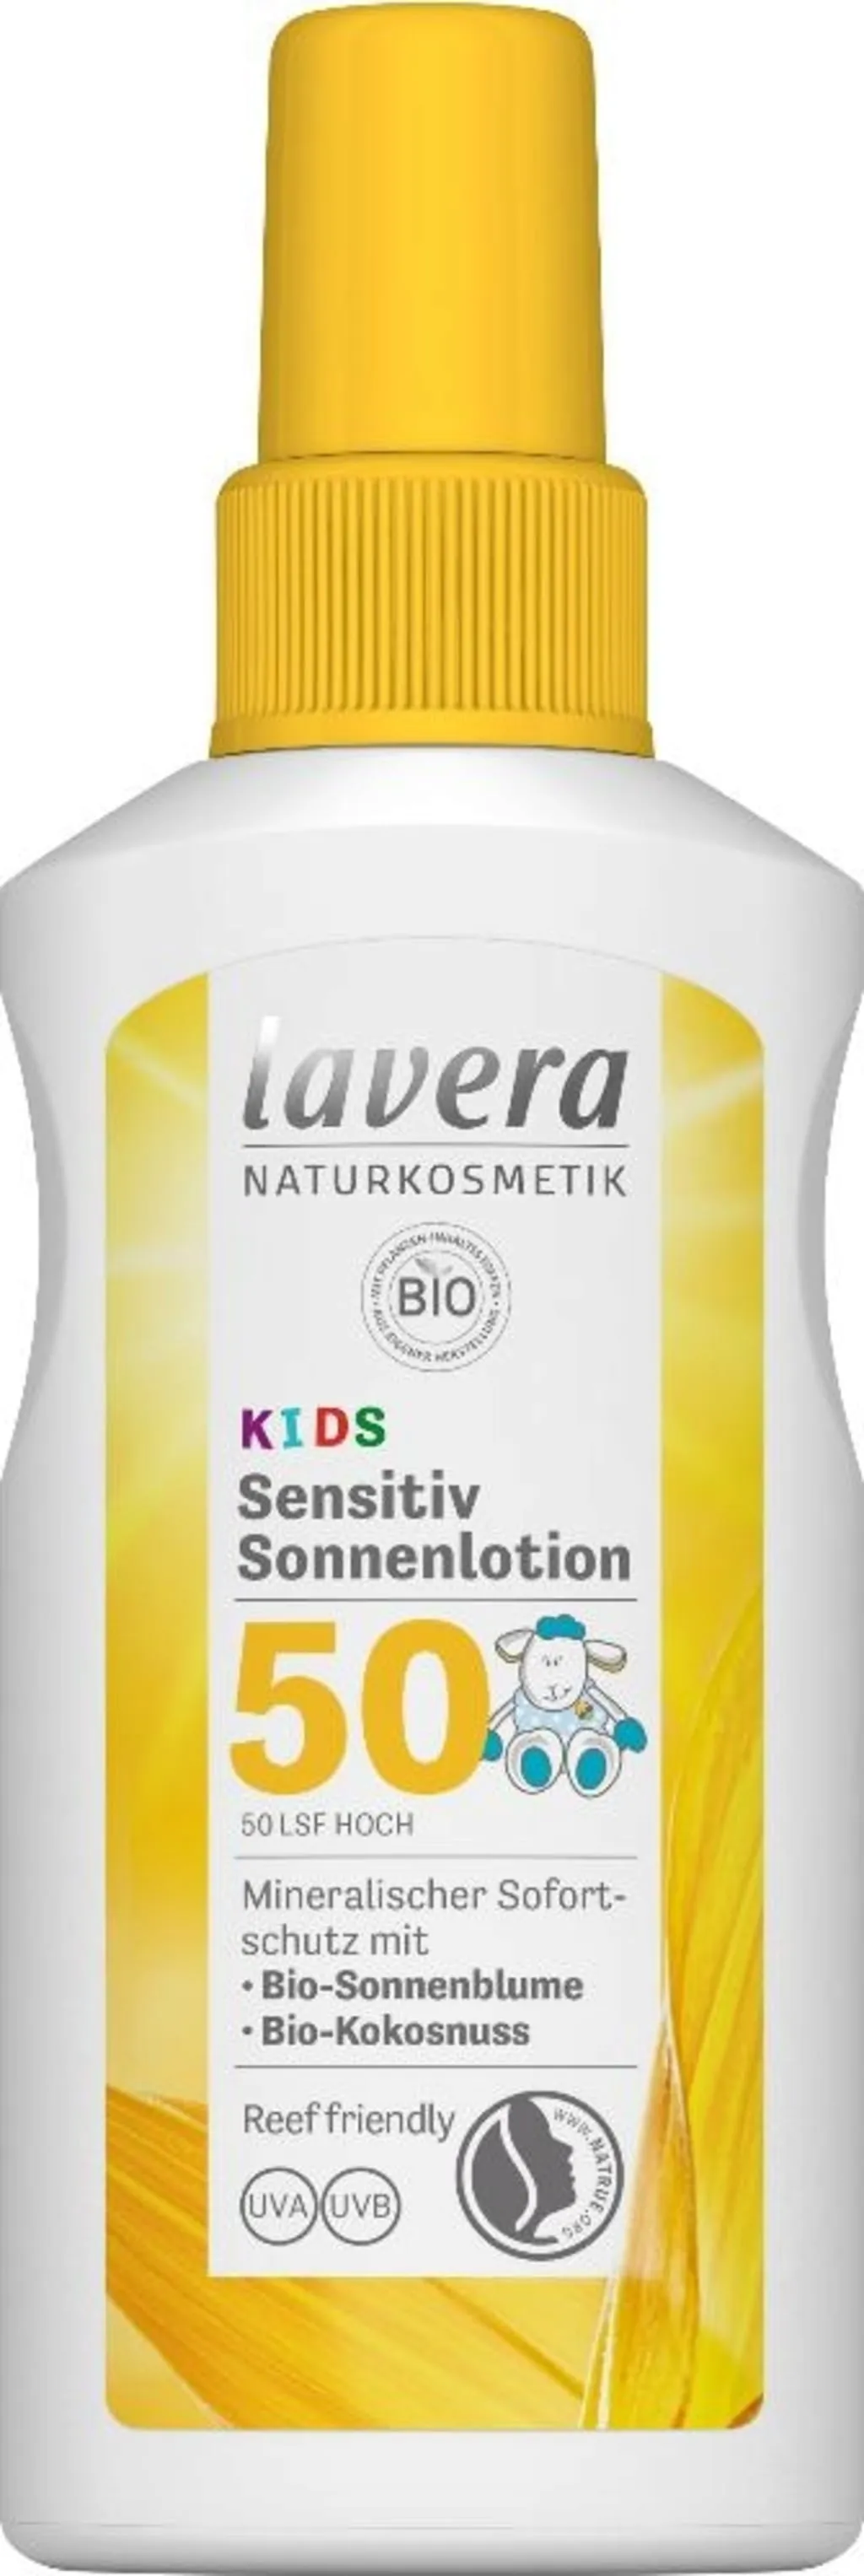 Lavera Sensitiv Sonnenlotion Kids LSF 50+ | 100 ml | Mineralischer Schutz für empfindliche Haut